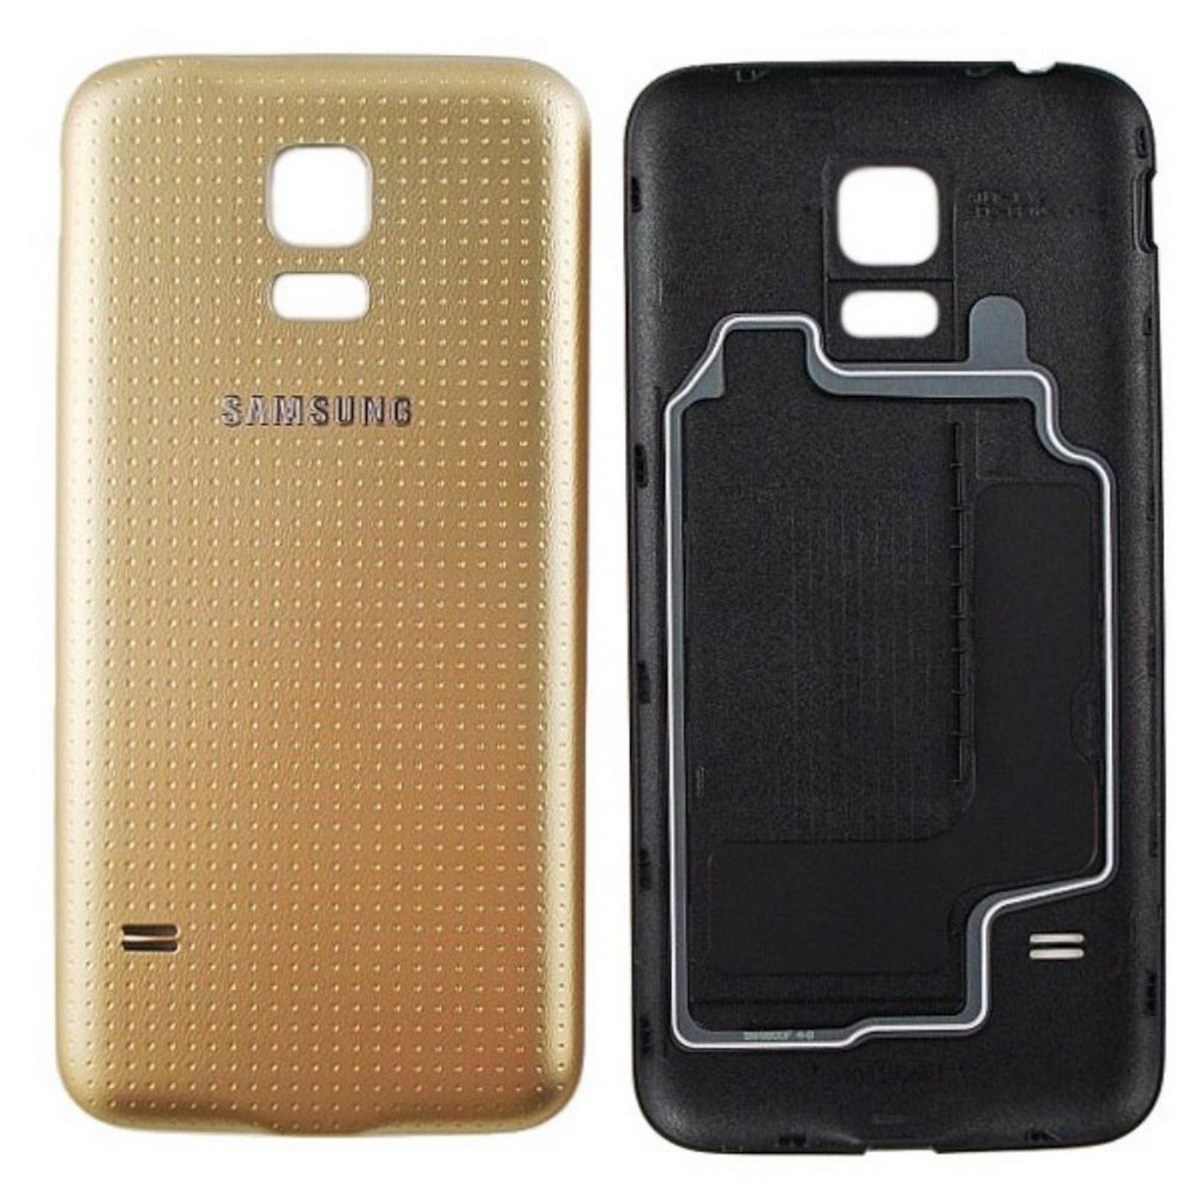 Samsung Galaxy s5 Mini SM-g800f. Samsung s5 Mini крышка. Samsung Galaxy s5 крышки. Samsung s5 Mini NFC.